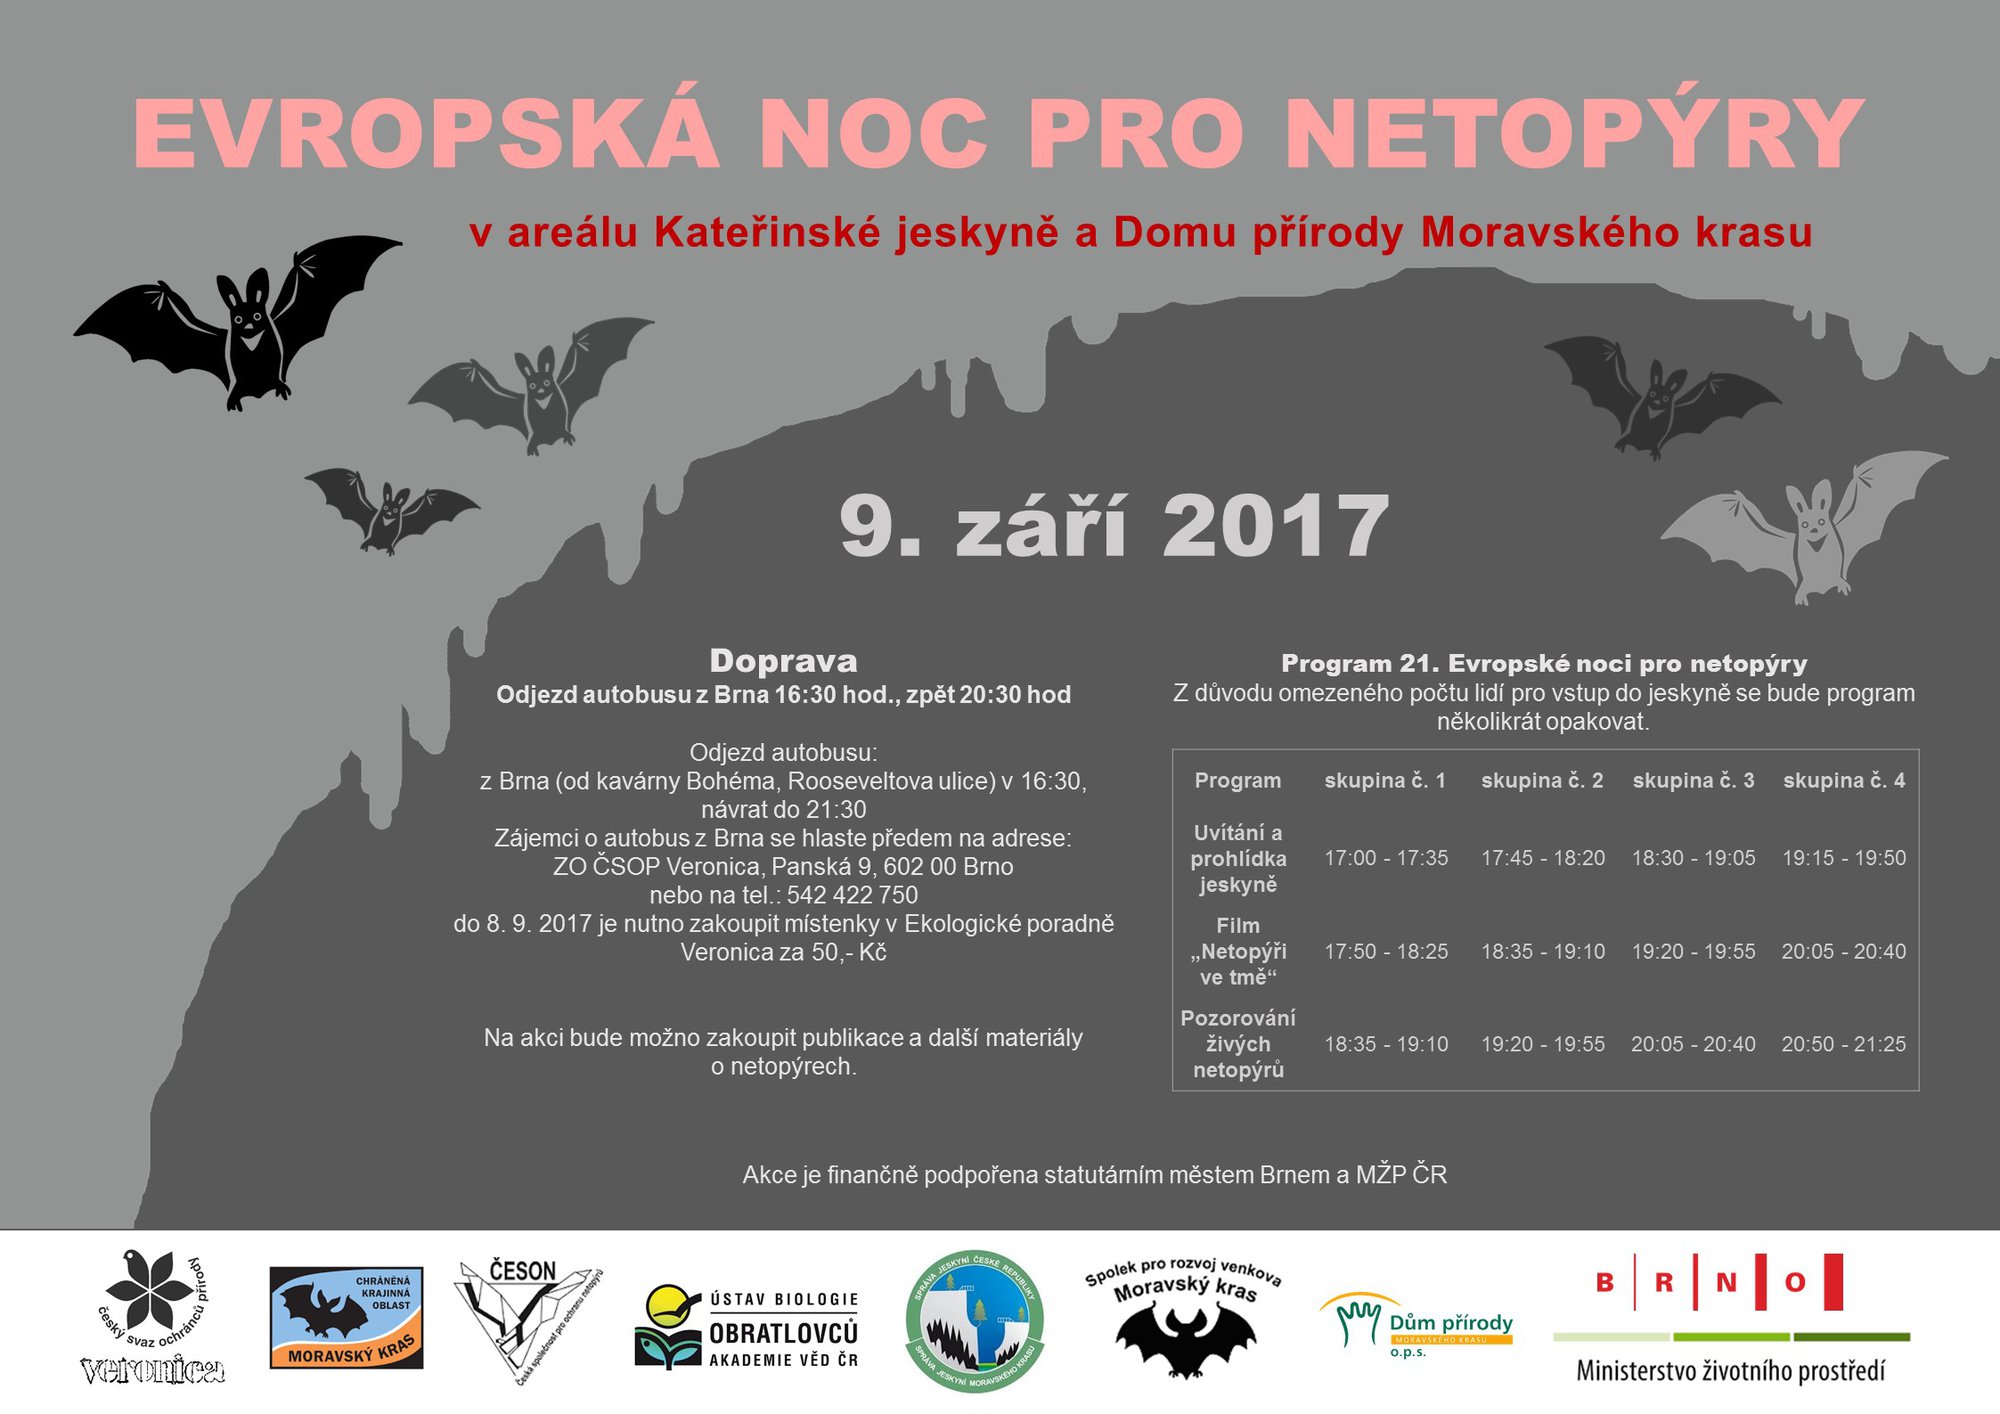 Evropská noc pro netopýry 2017 Moravský kras